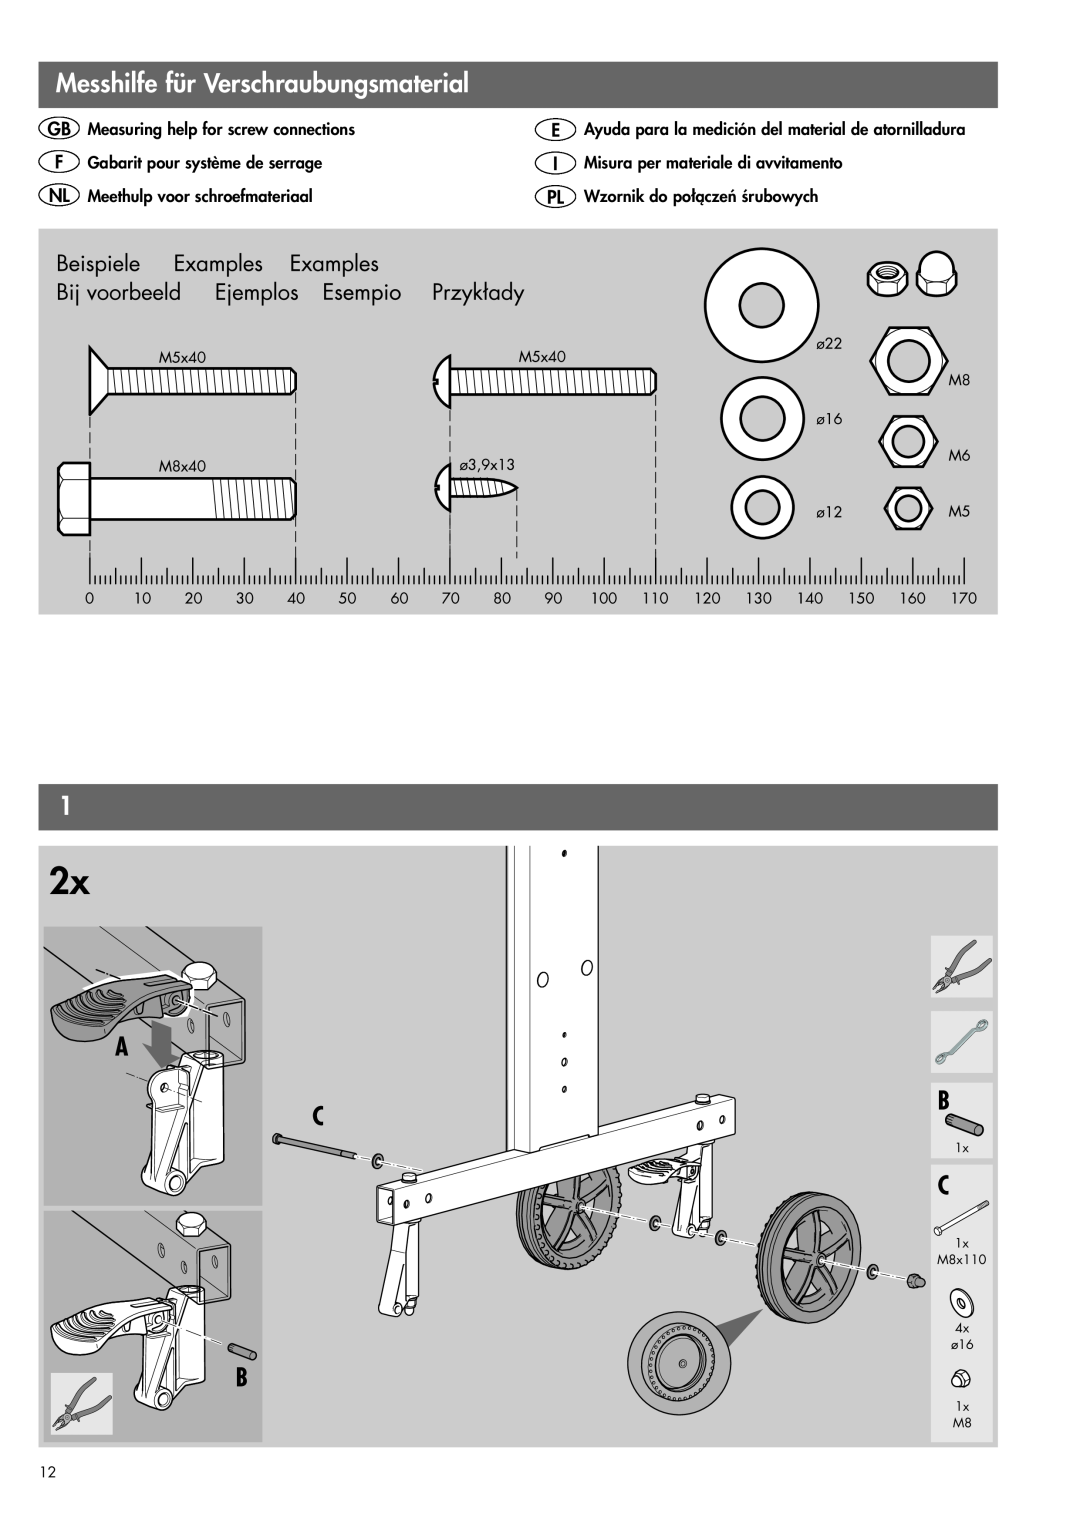 Kettler 07178-000 manual Messhilfe für Verschraubungsmaterial, Ayuda para la medición del material de atornilladura, M8x110 